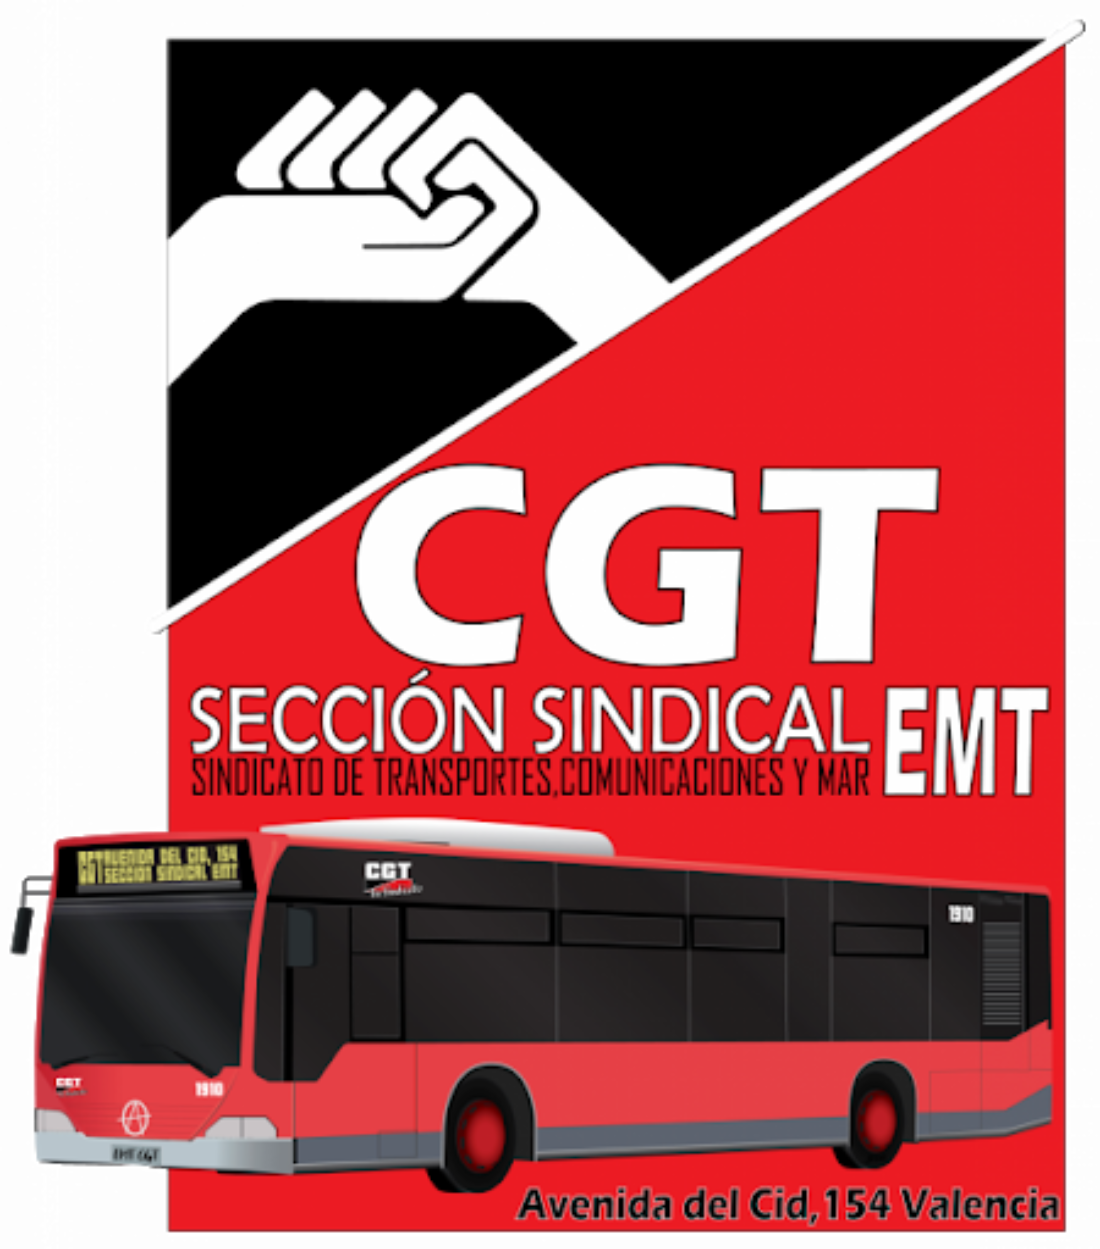 CGT denuncia que EMT no tiene plan de emergencia de autoprotección en el parking de Brujas – Mercado Central